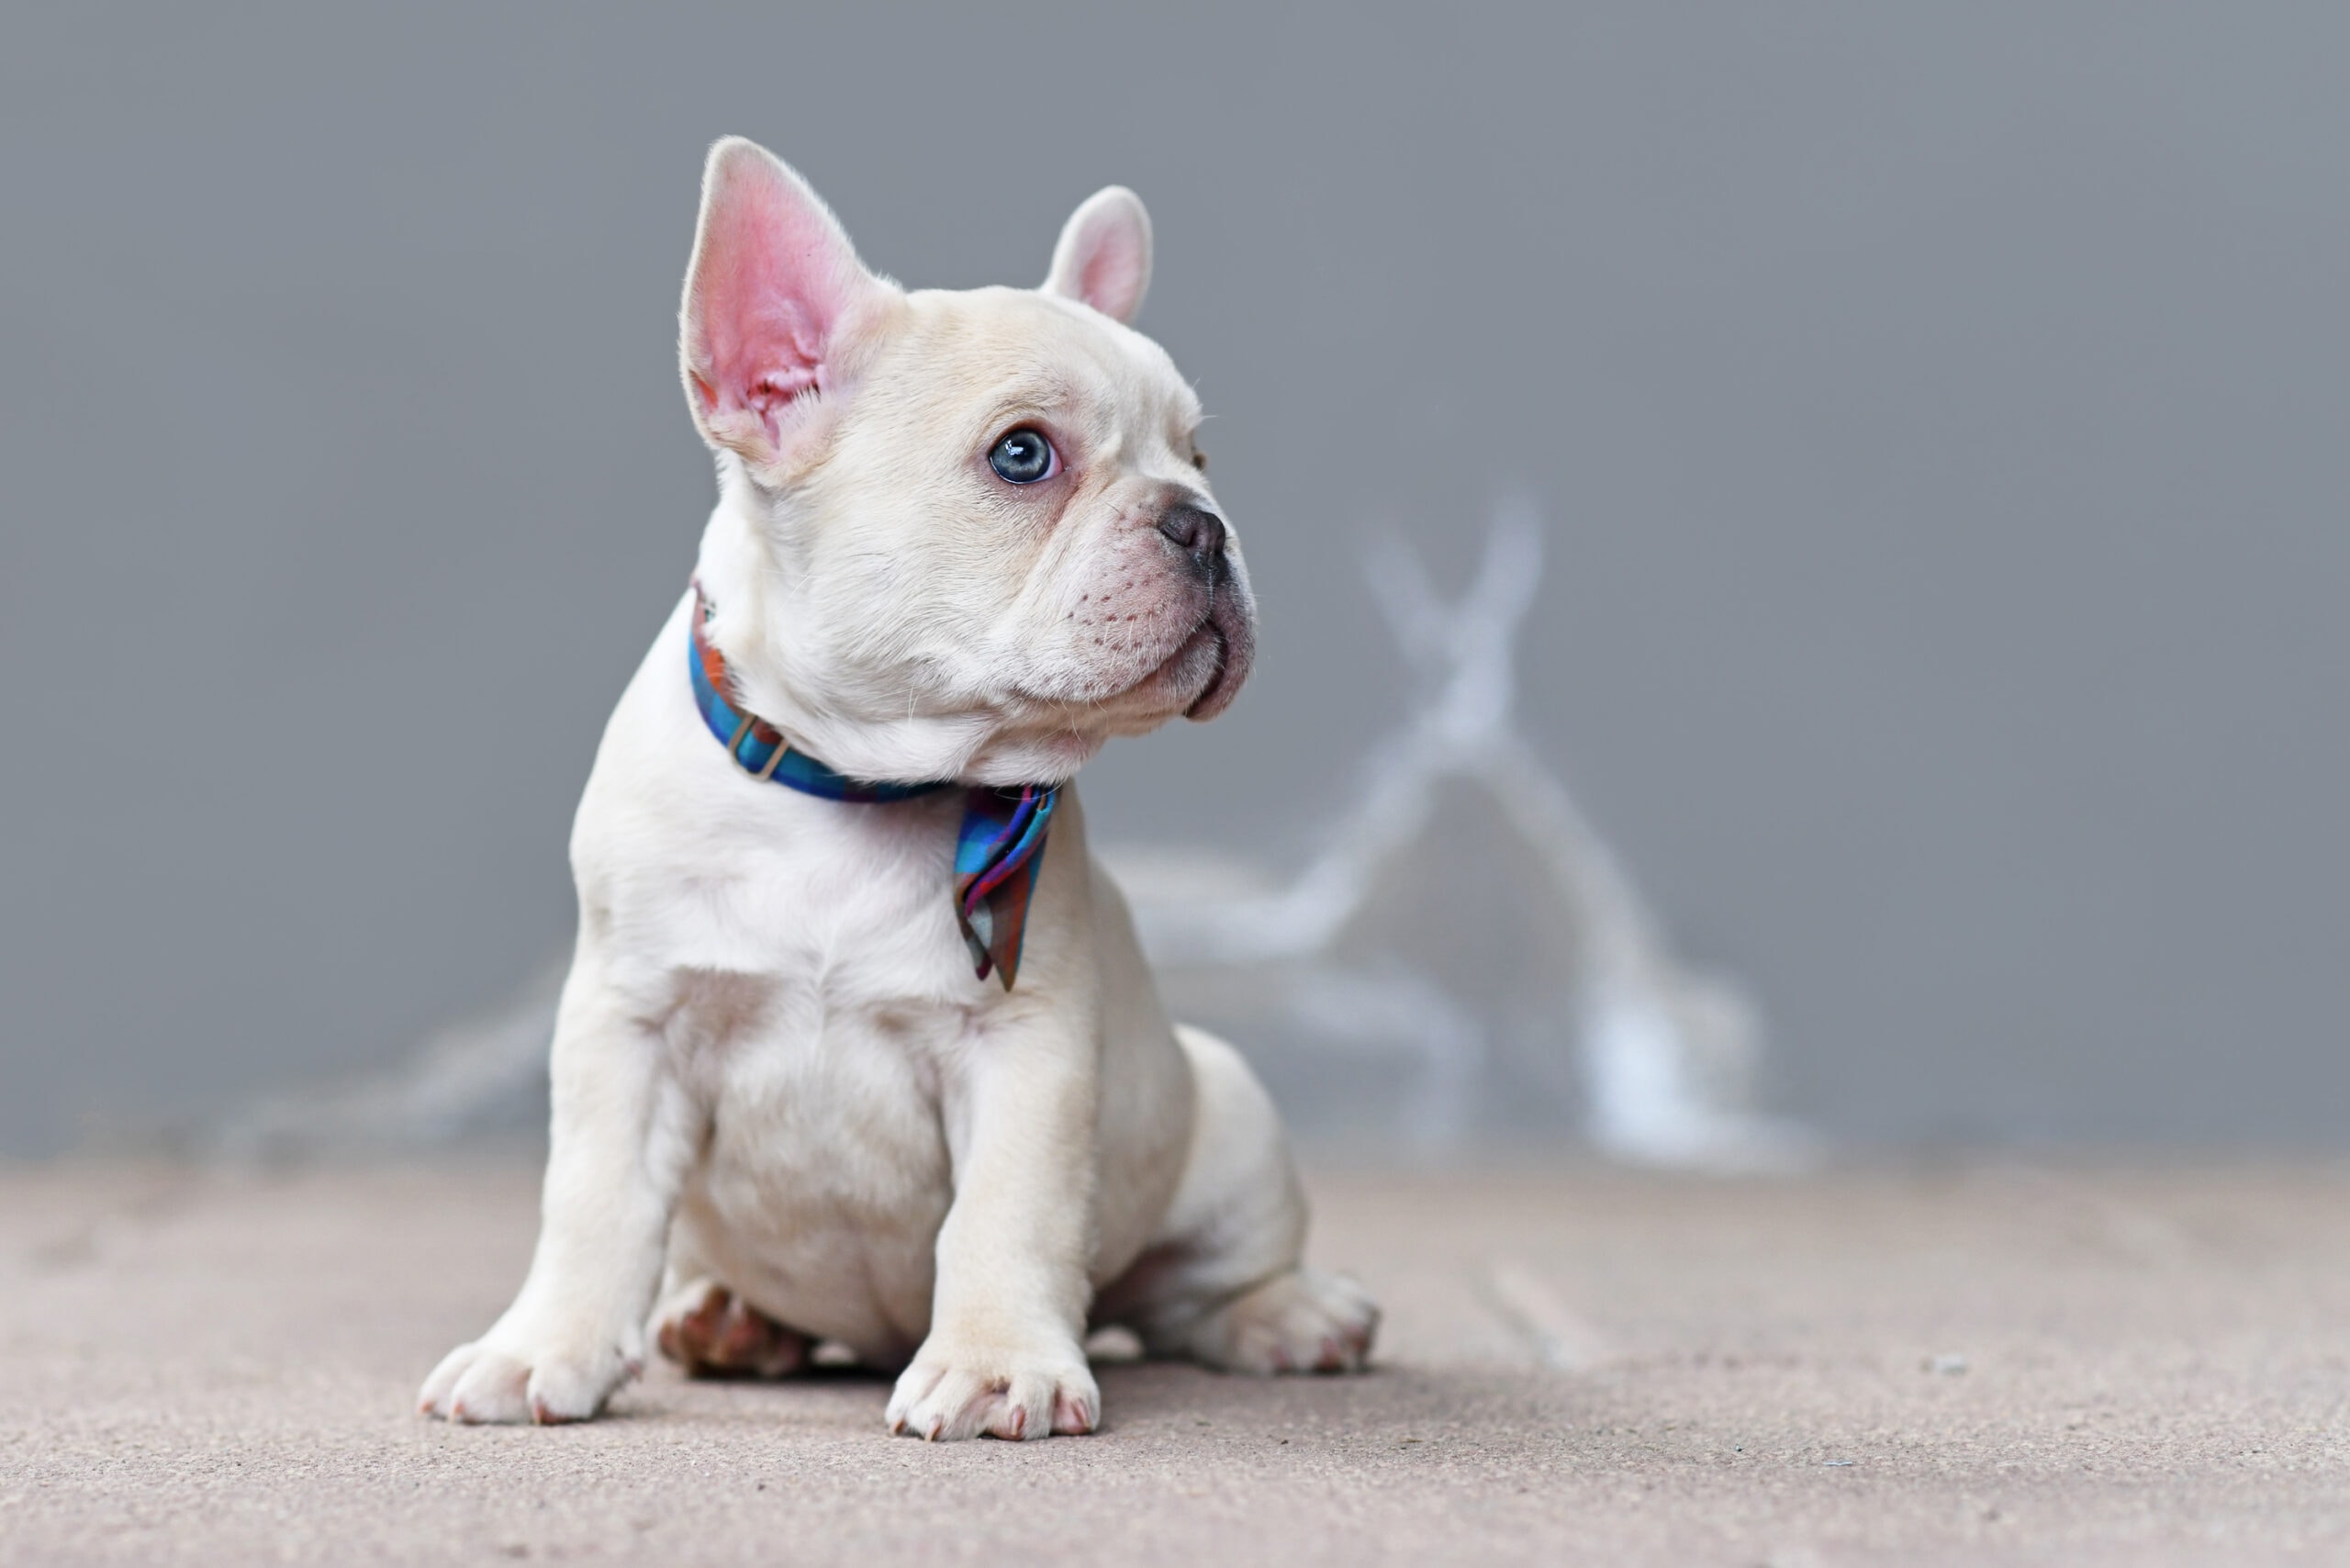 Small cream white colored French Bulldog dog puppy